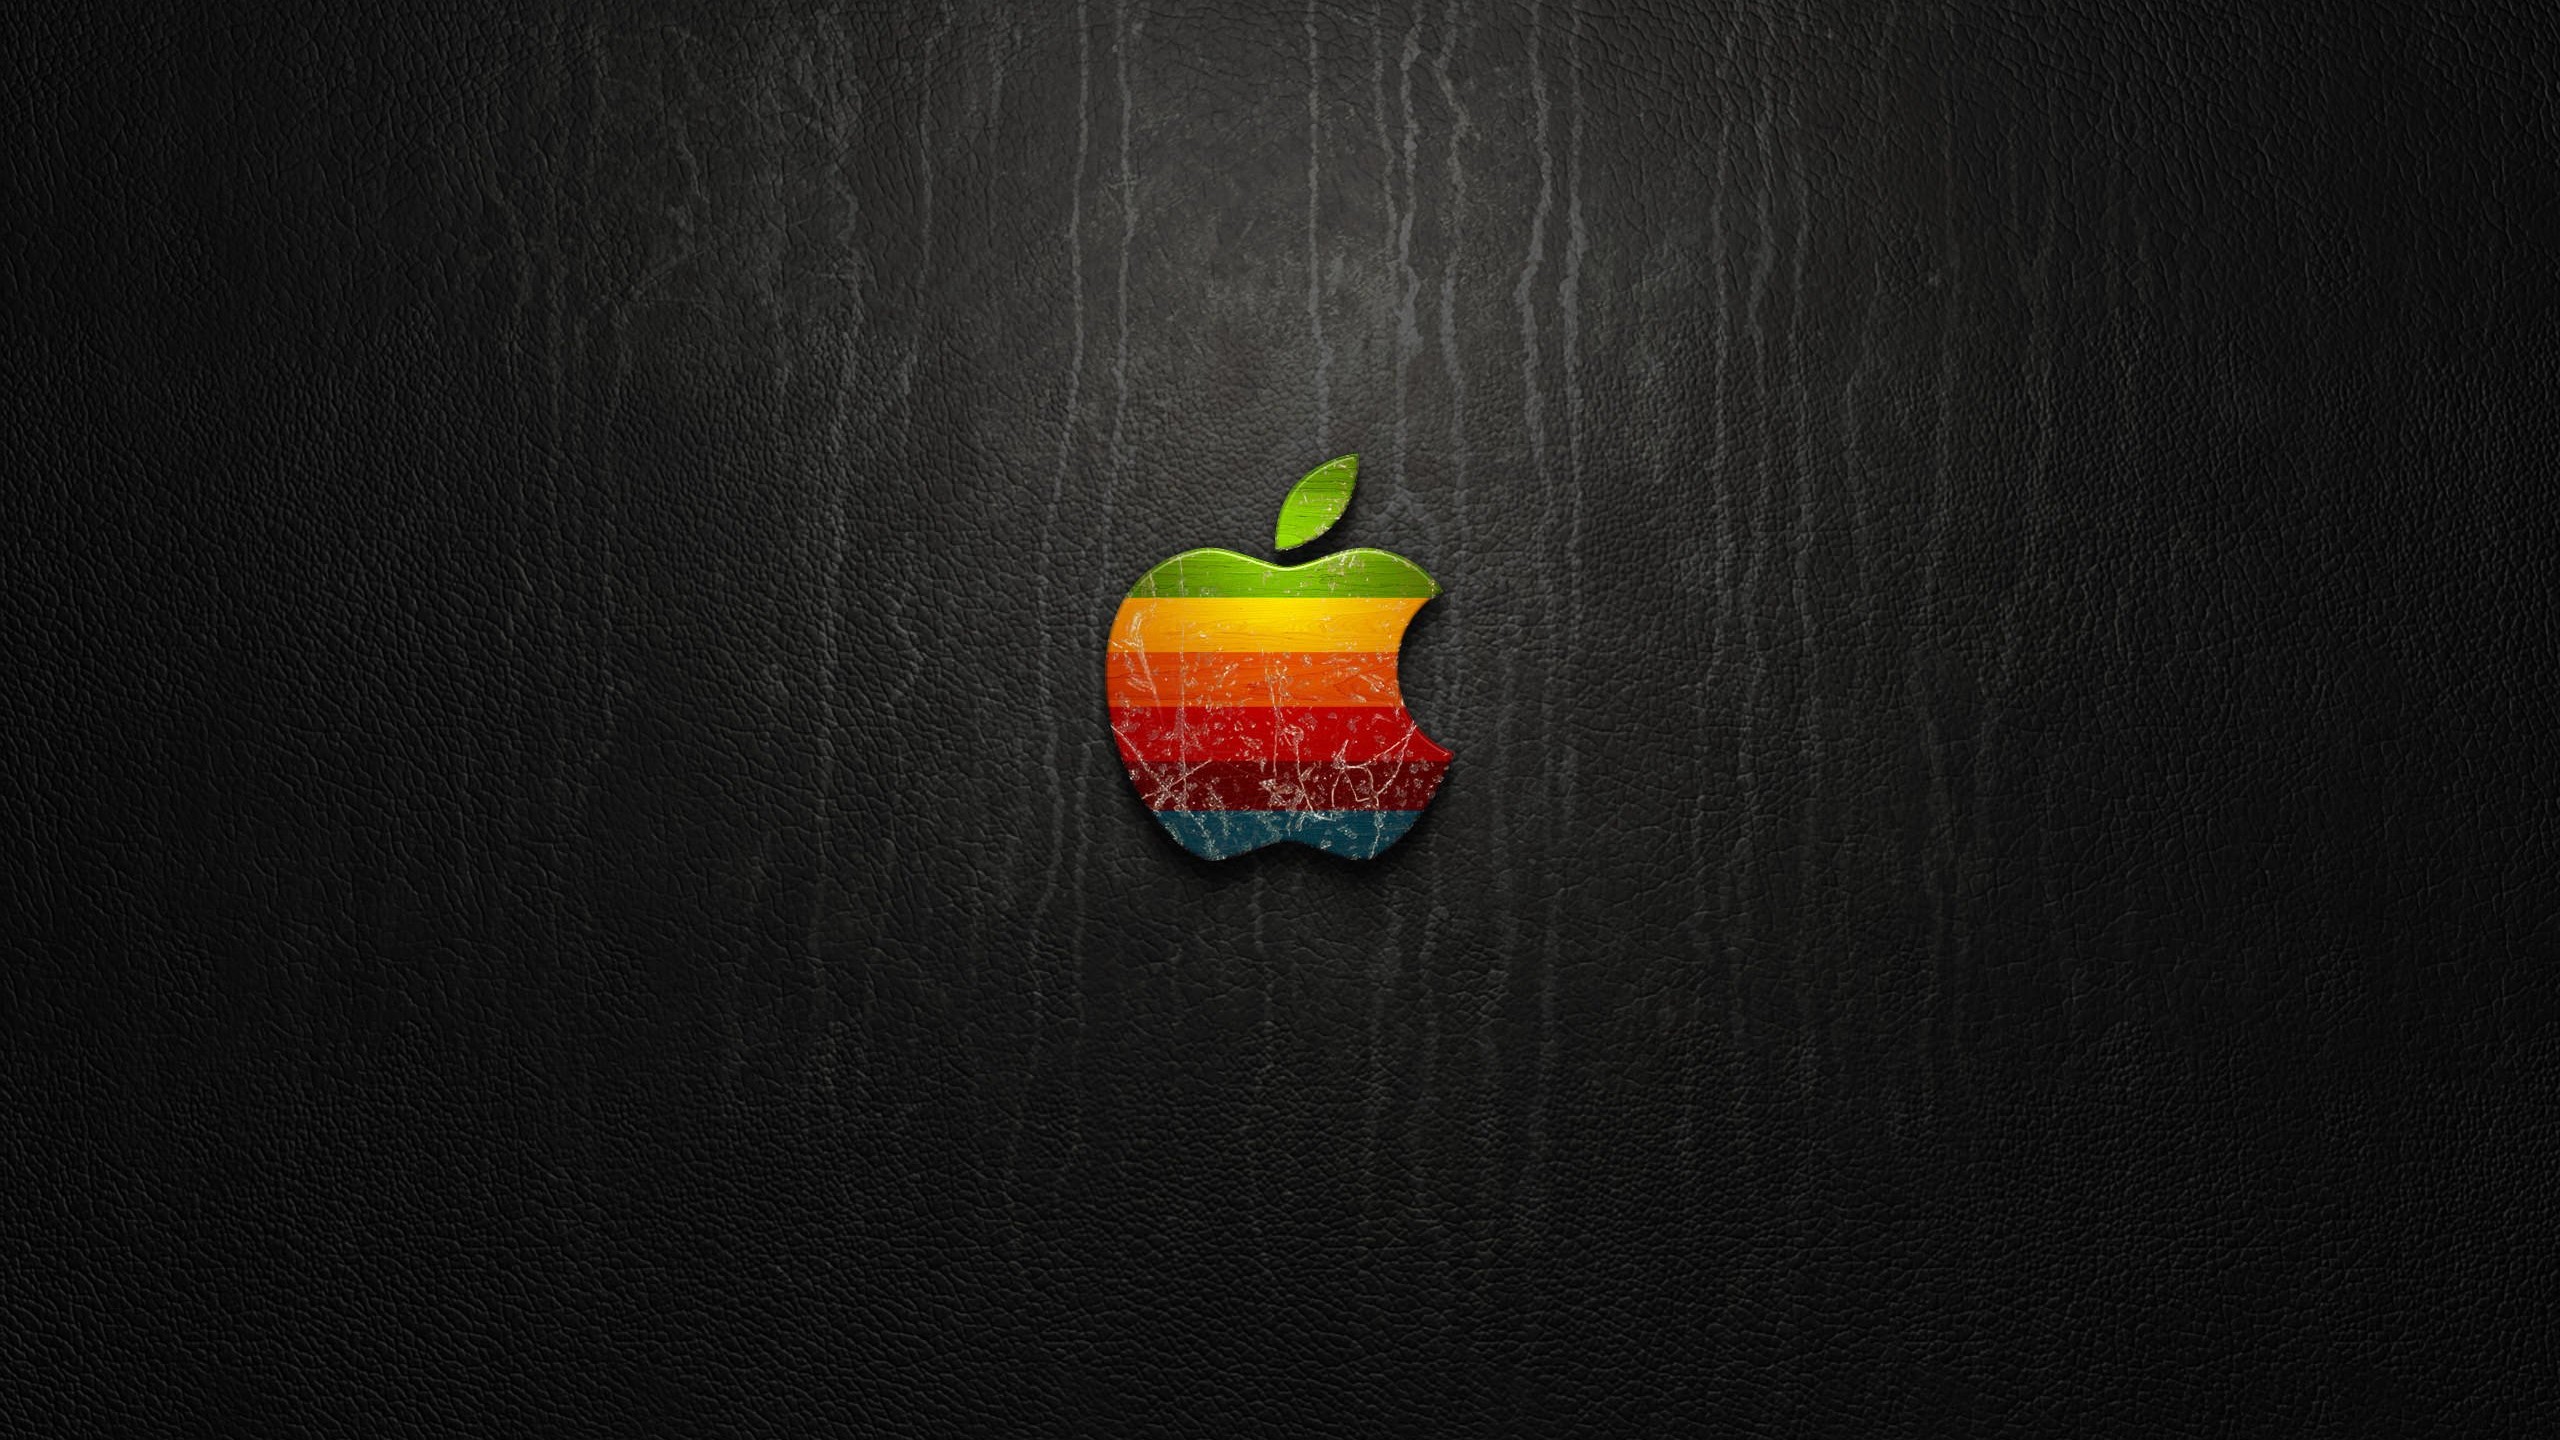 Multicolored Apple Logo Wallpaper for Social Media YouTube Channel Art